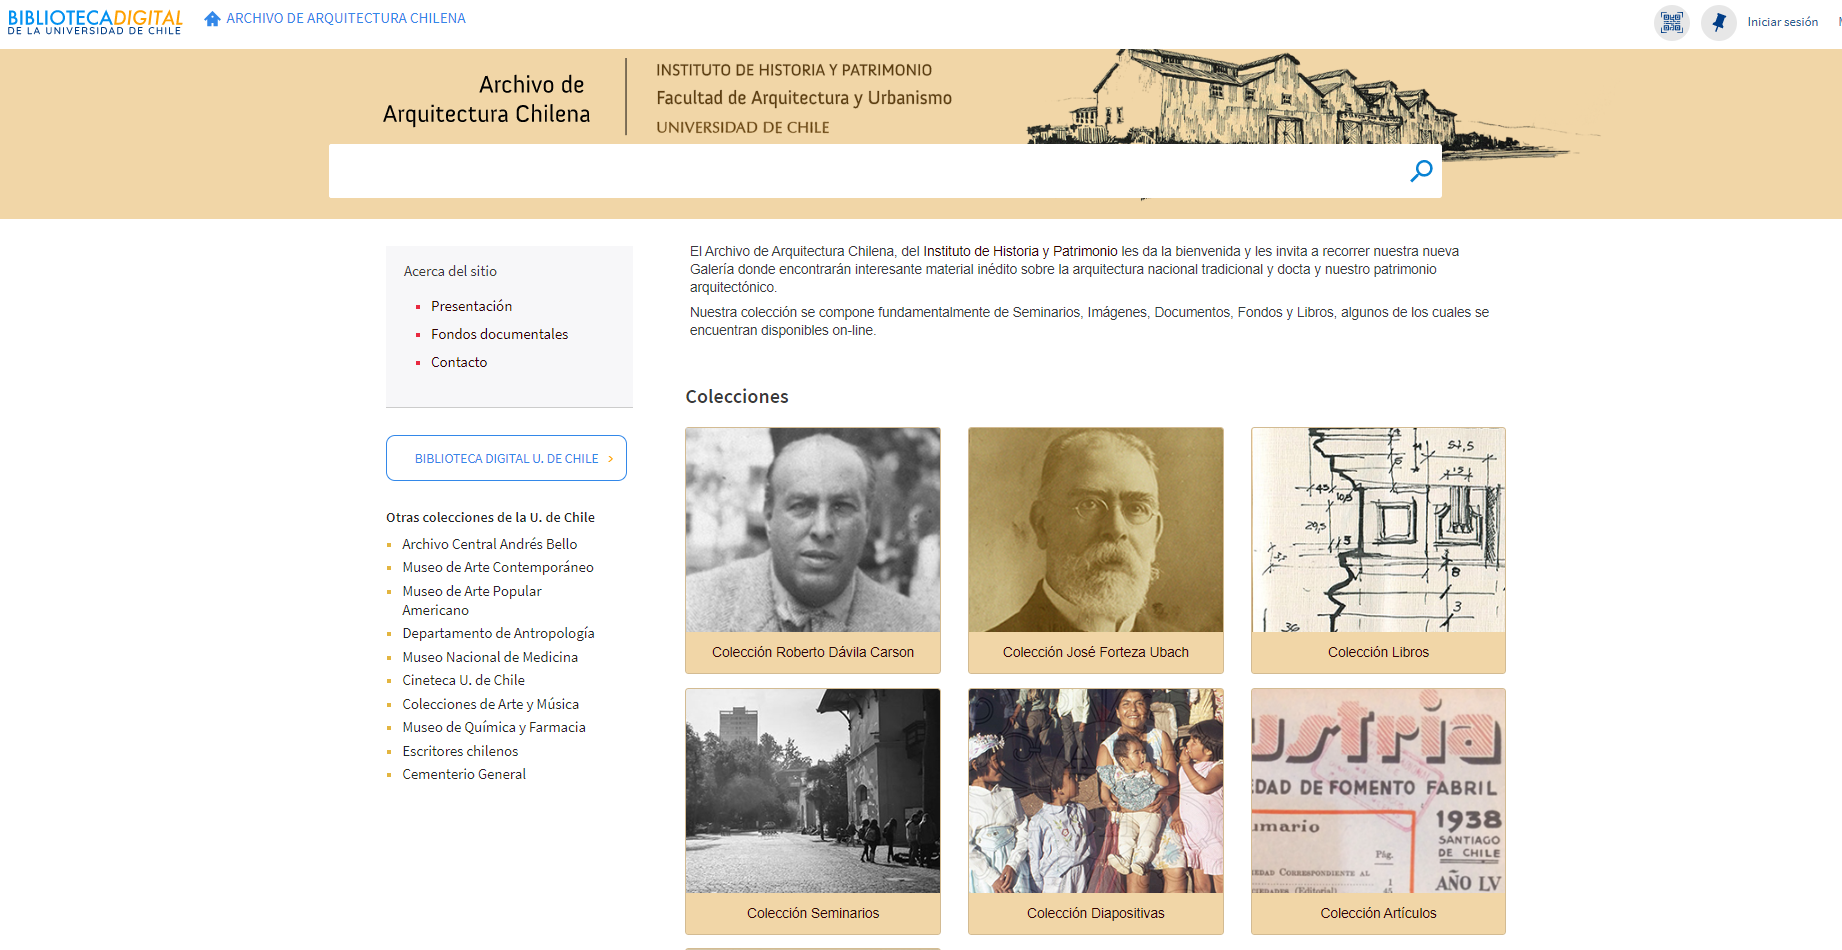 Proyecto de digitalización y recuperación y difusión del material gráfico y documental perteneciente al Archivo de Arquitectura Chilena (3ª fase)